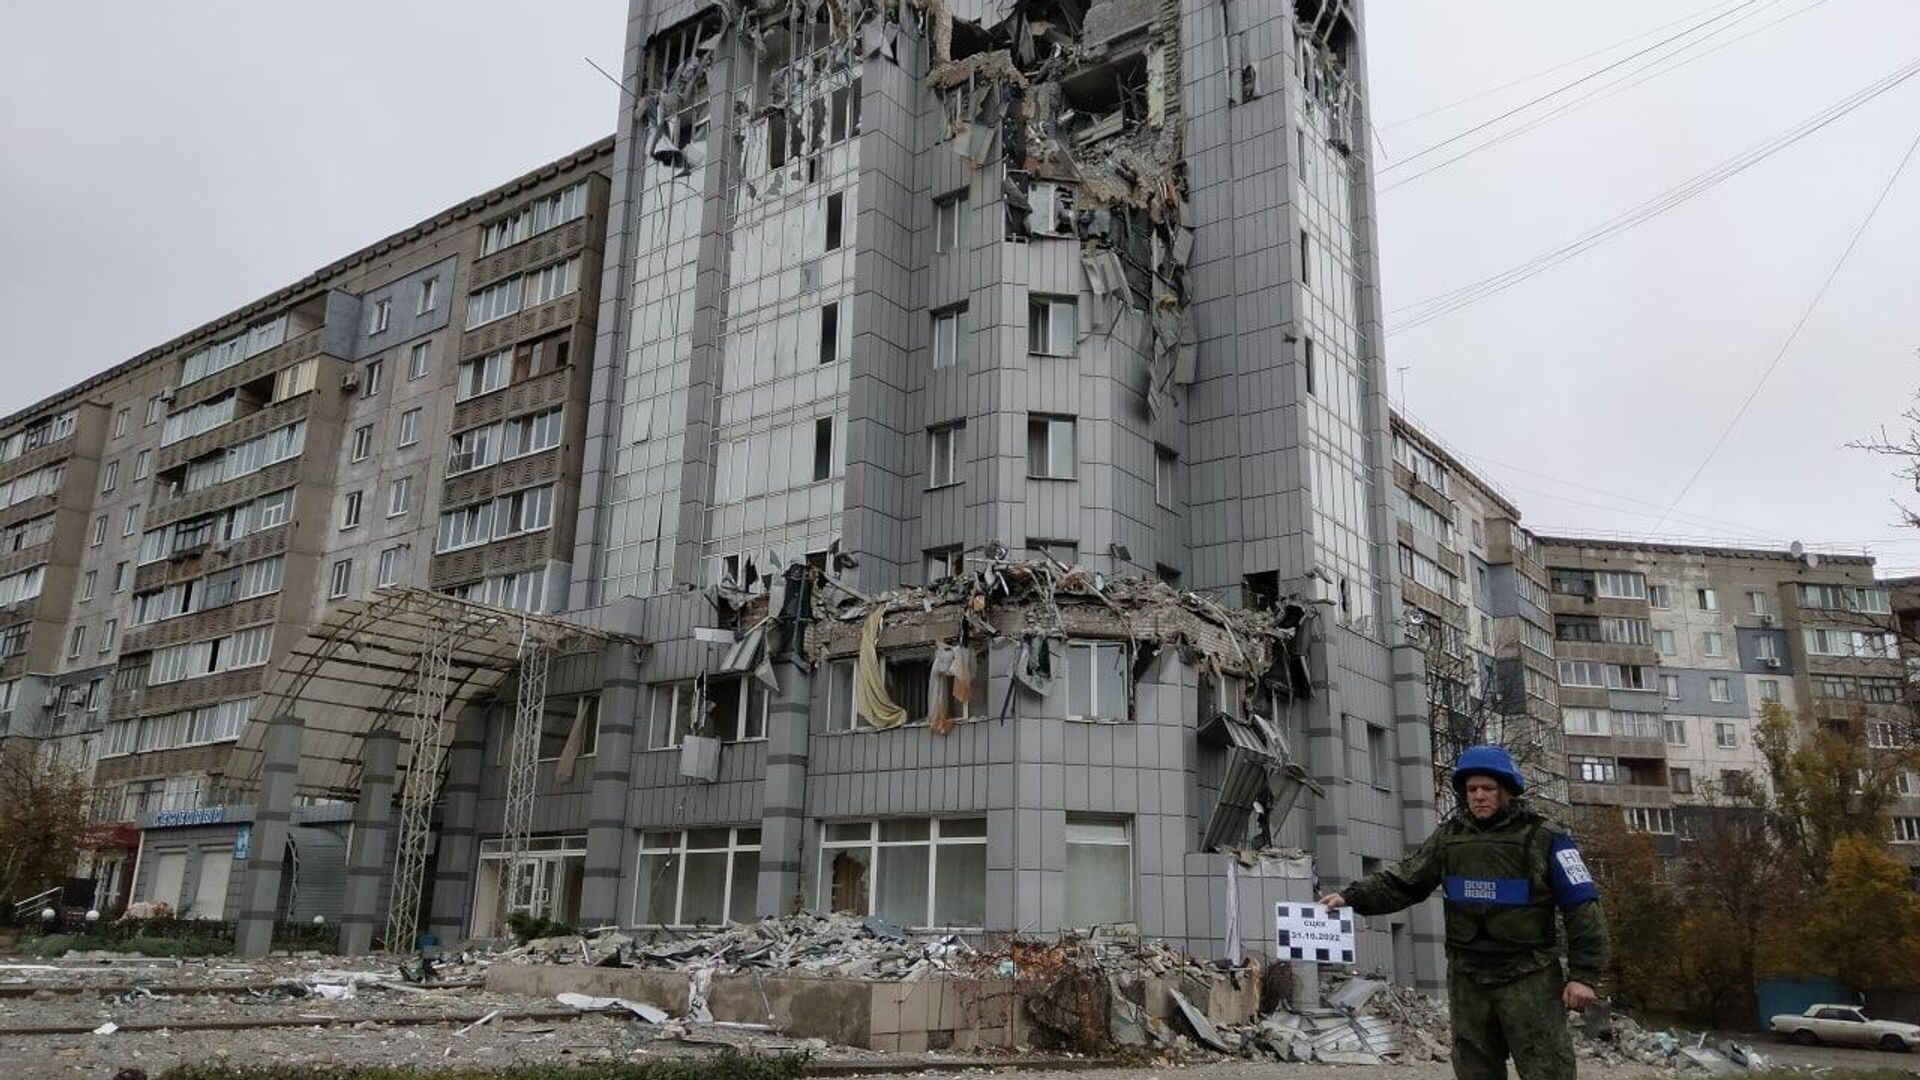 гостиница украина луганск